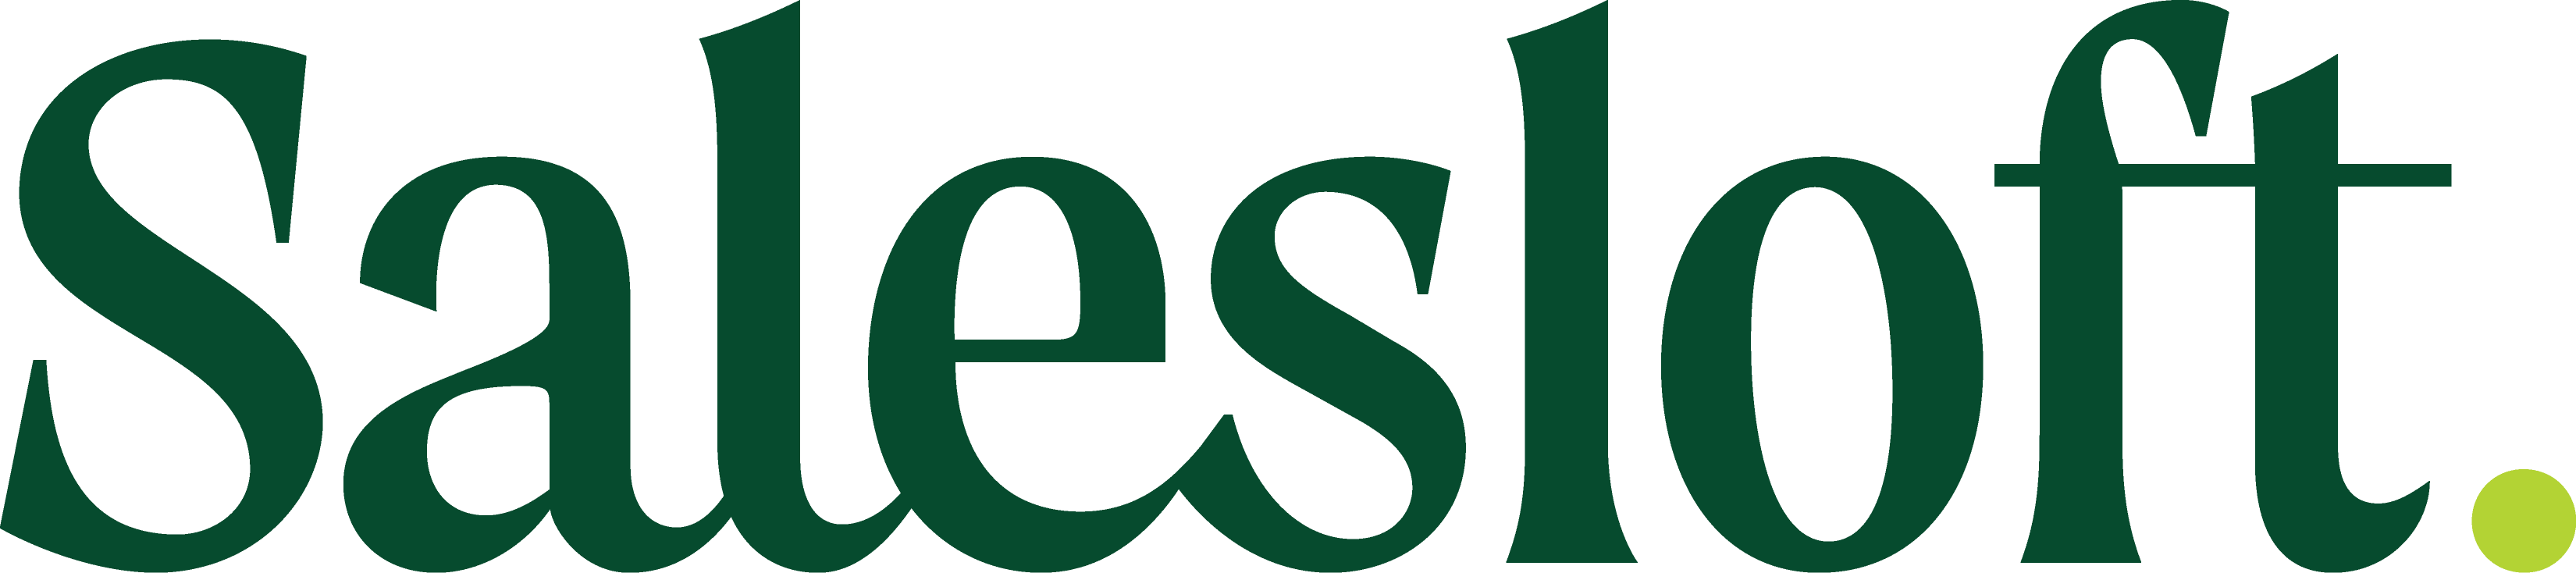 Salesloft Color Logo